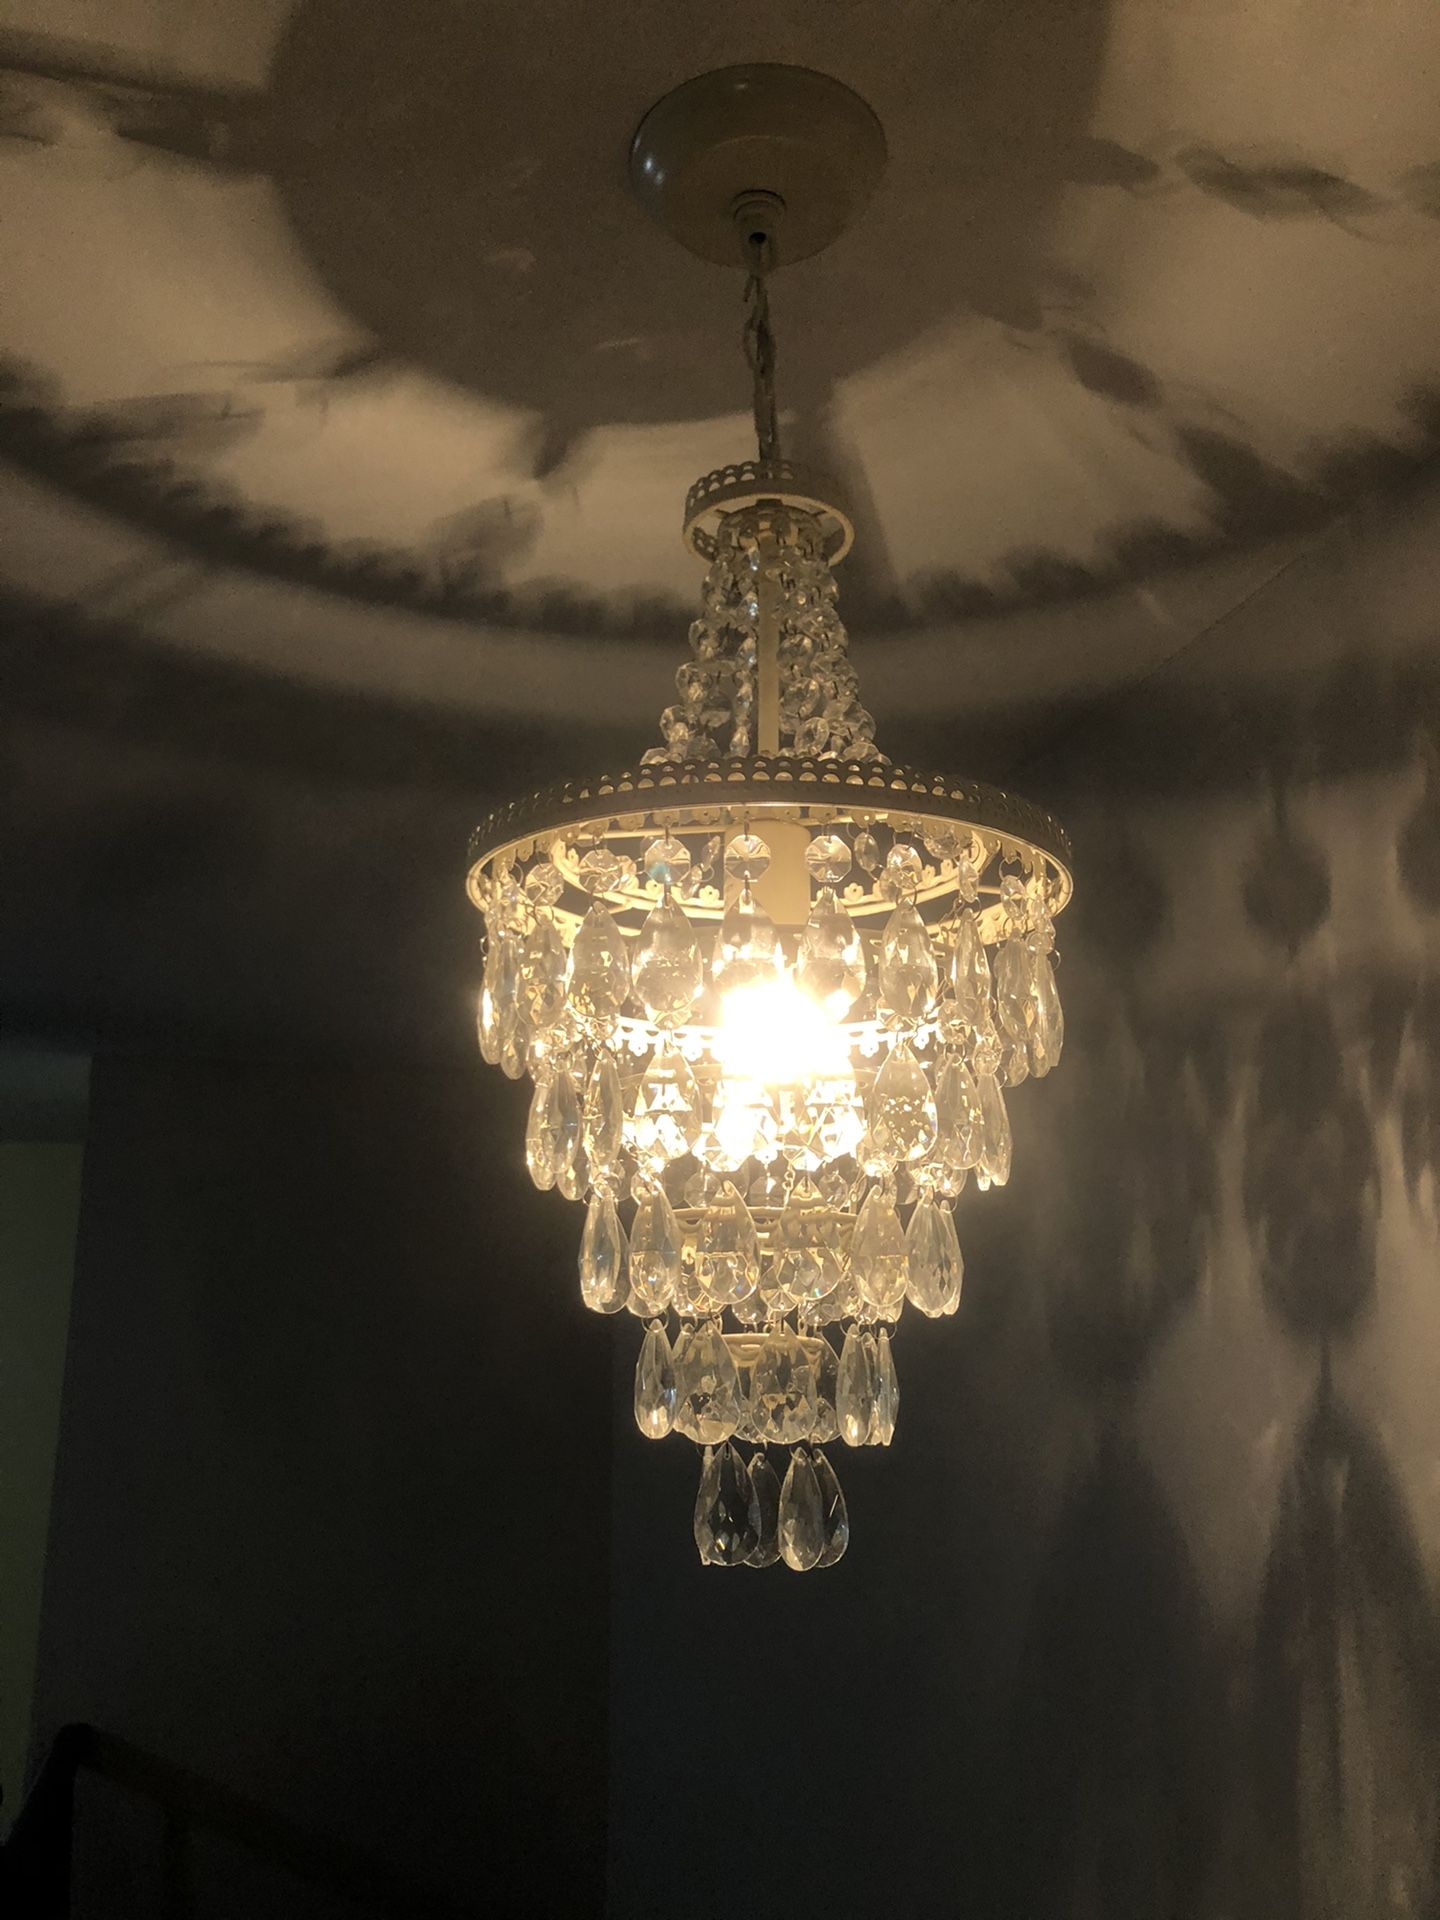 Acryllic crystal diamond chandelier